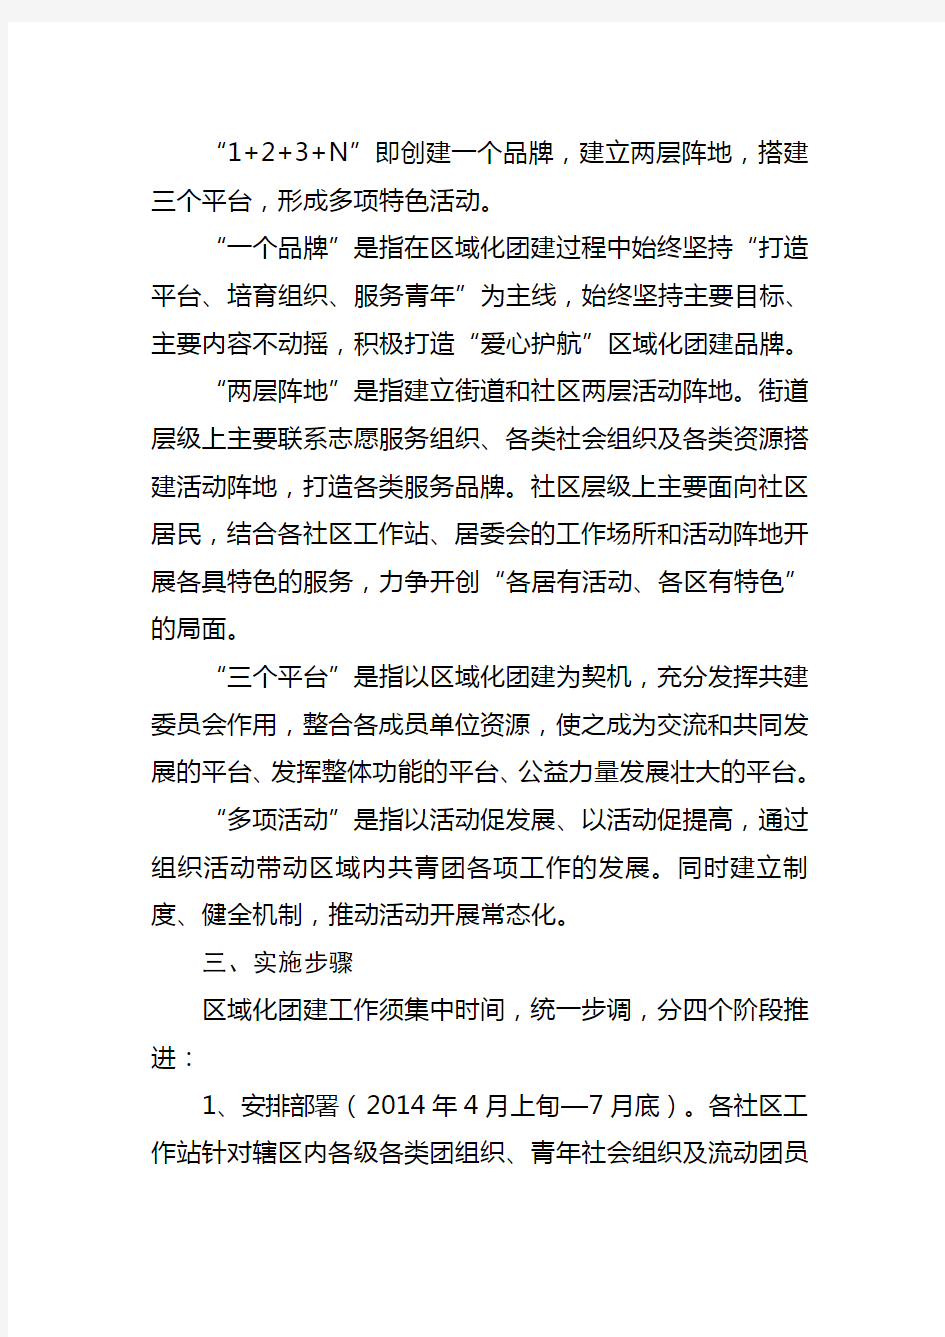 东城街道团工委关于推进区域化团建的实施方案(20140722定稿)